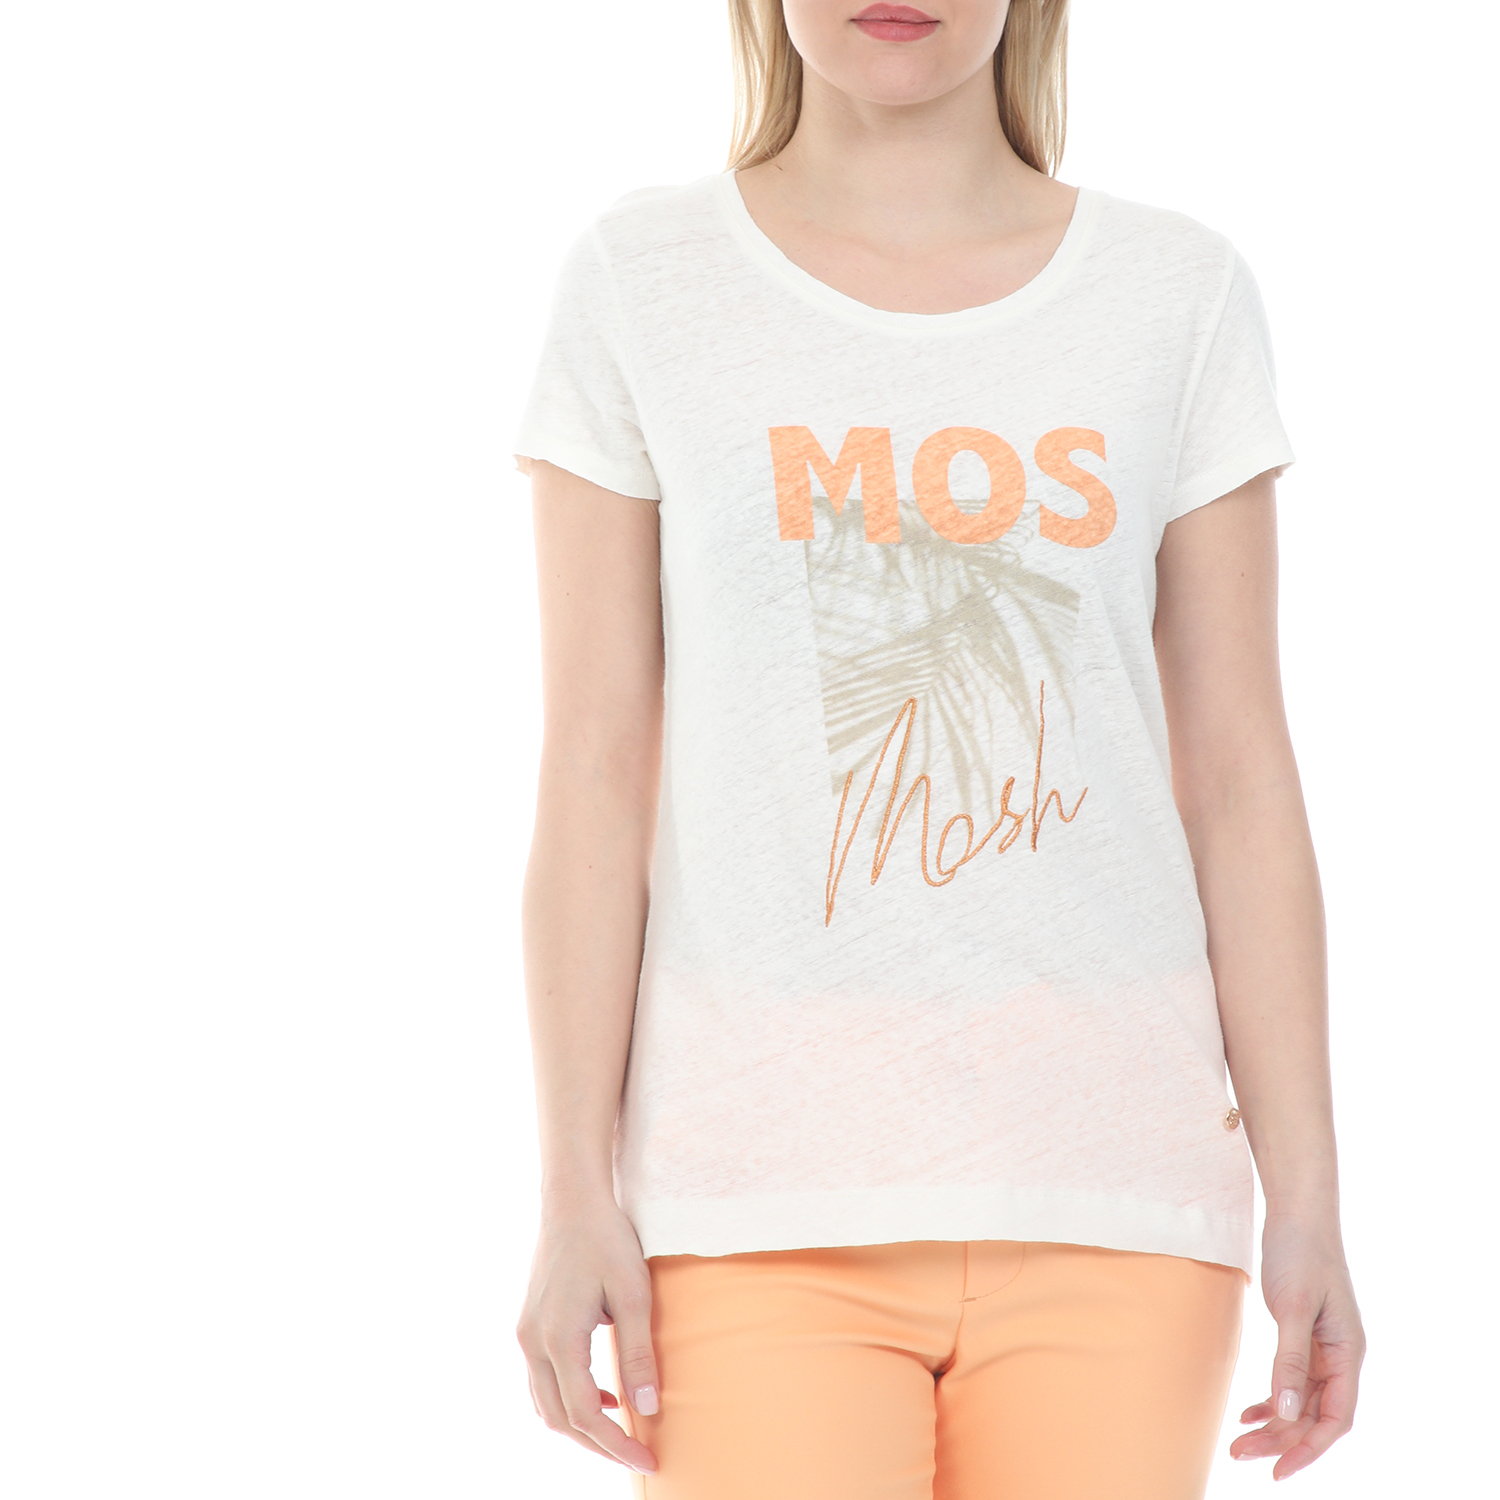 Γυναικεία/Ρούχα/Μπλούζες/Κοντομάνικες MOS MOSH - Γυναικεία μπλούζα MOS MOSH Abigail εκρού